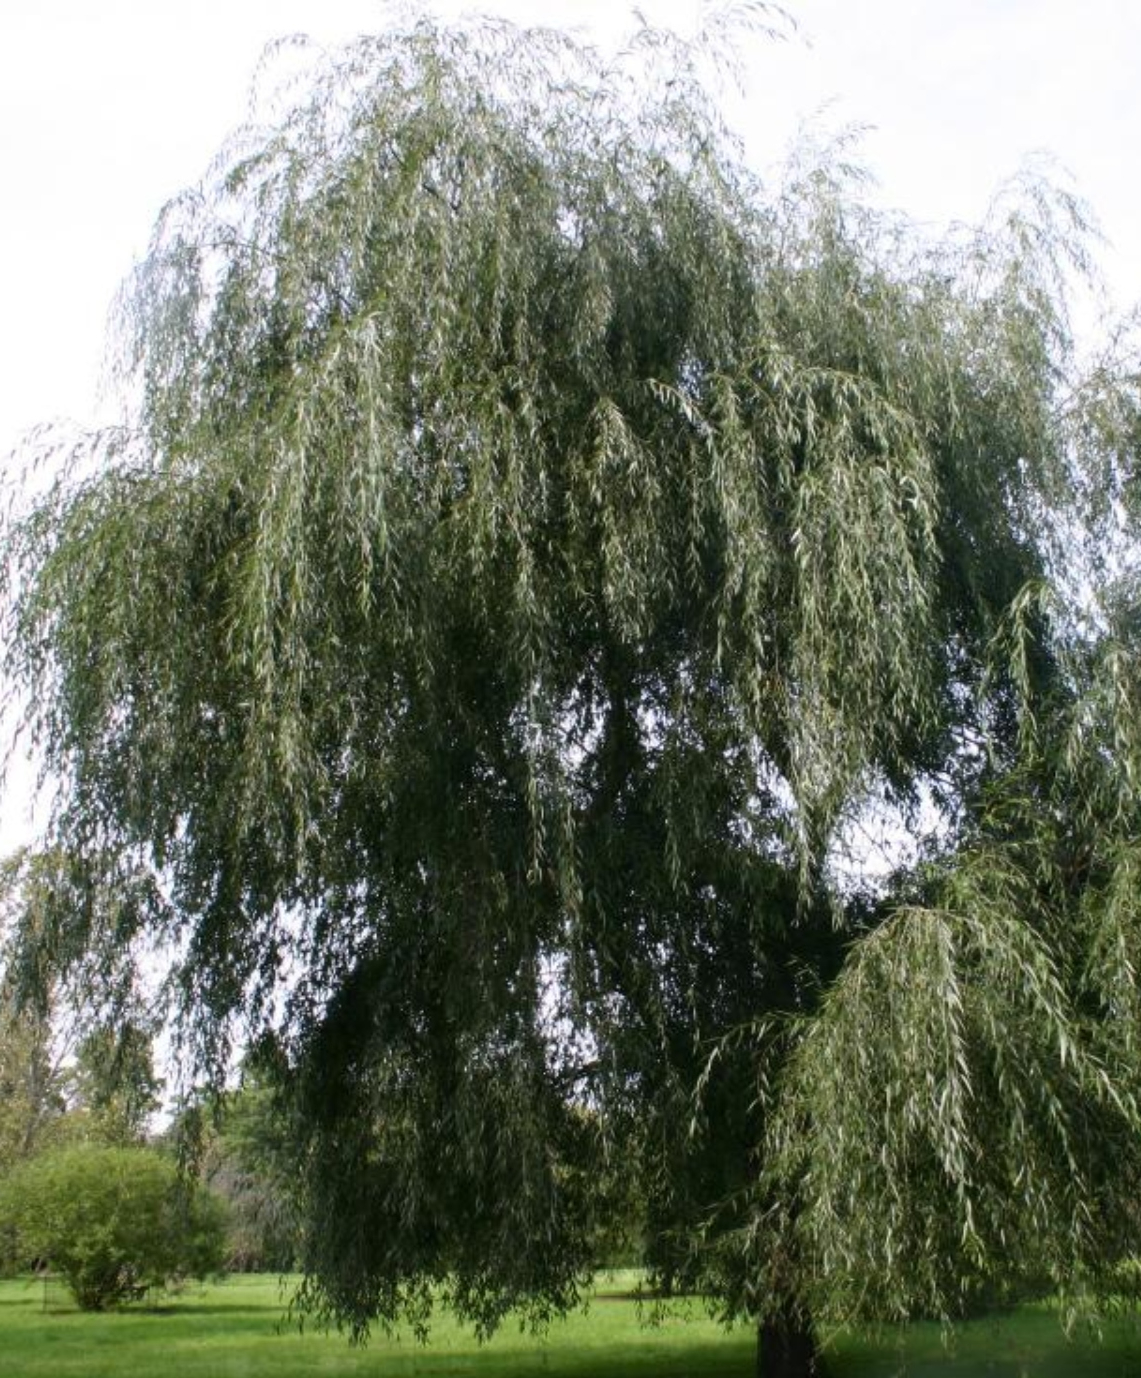 The White Willow tree, Salix alba